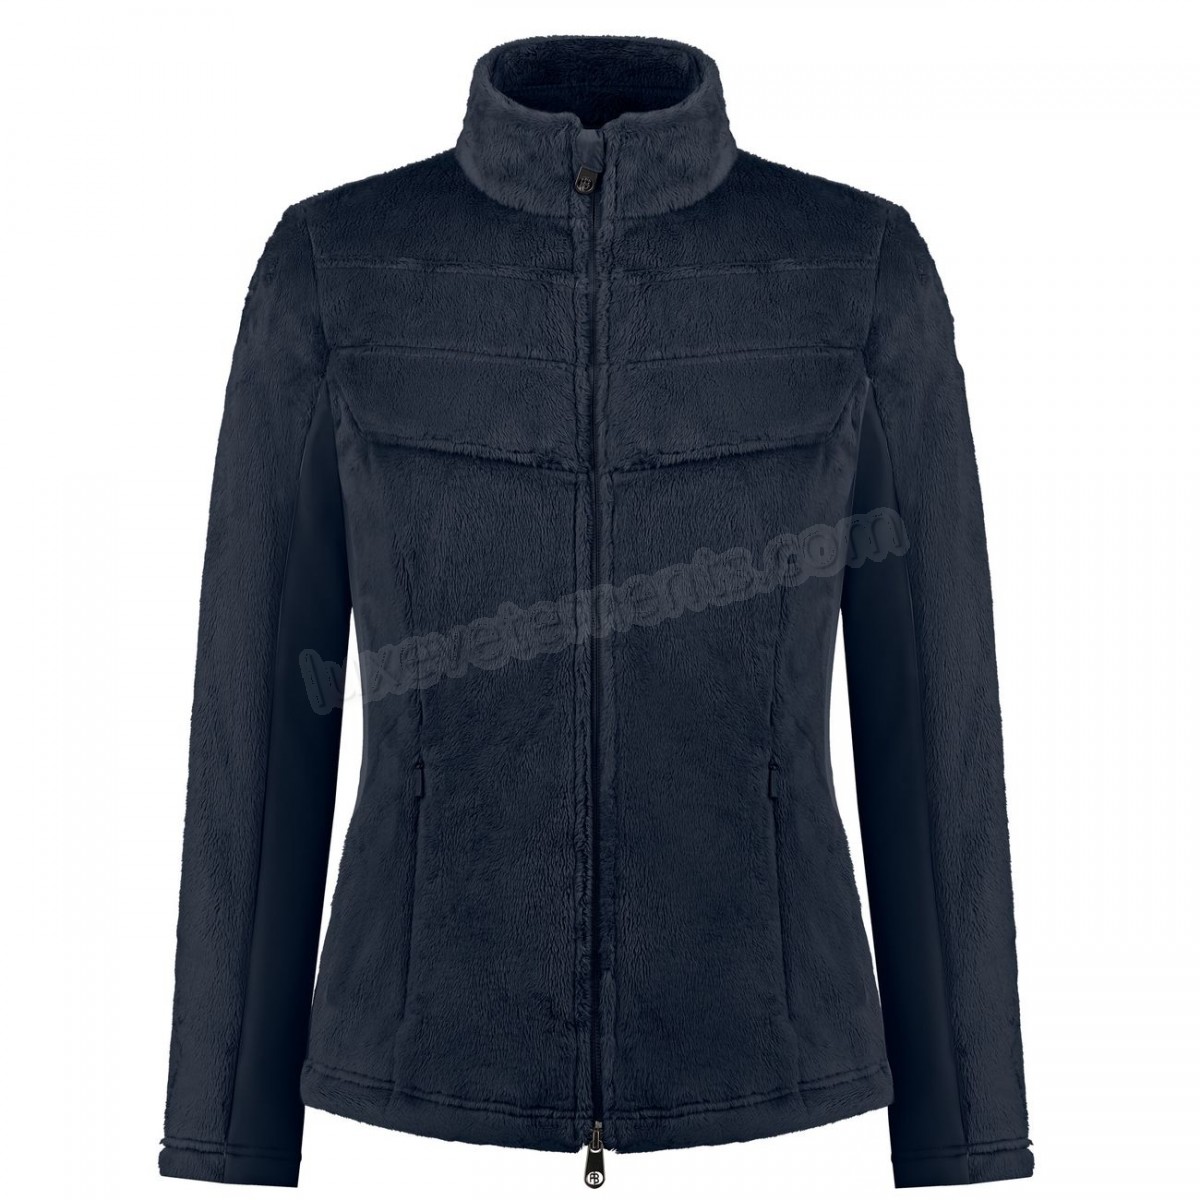 Poivre Blanc-Sports d'hiver femme POIVRE BLANC Polaire Poivre Blanc Long Pile Fleece Jacket 1603 Gothic Blue 4 Femme Vente en ligne - -0